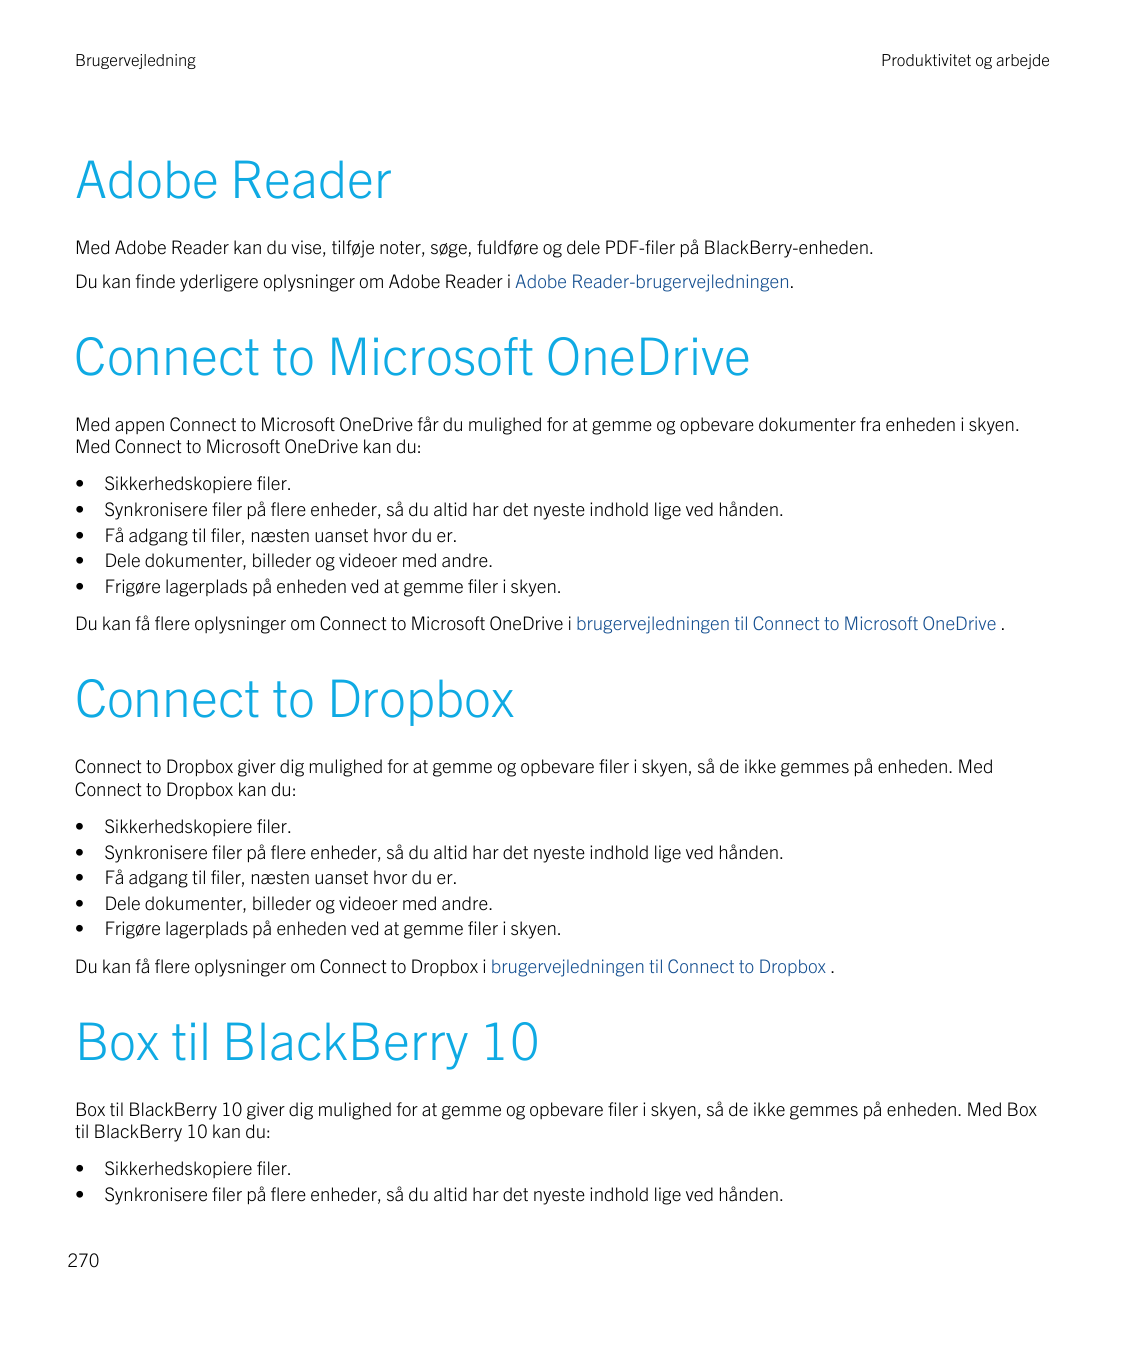 BrugervejledningProduktivitet og arbejdeAdobe ReaderMed Adobe Reader kan du vise, tilføje noter, søge, fuldføre og dele PDF-file